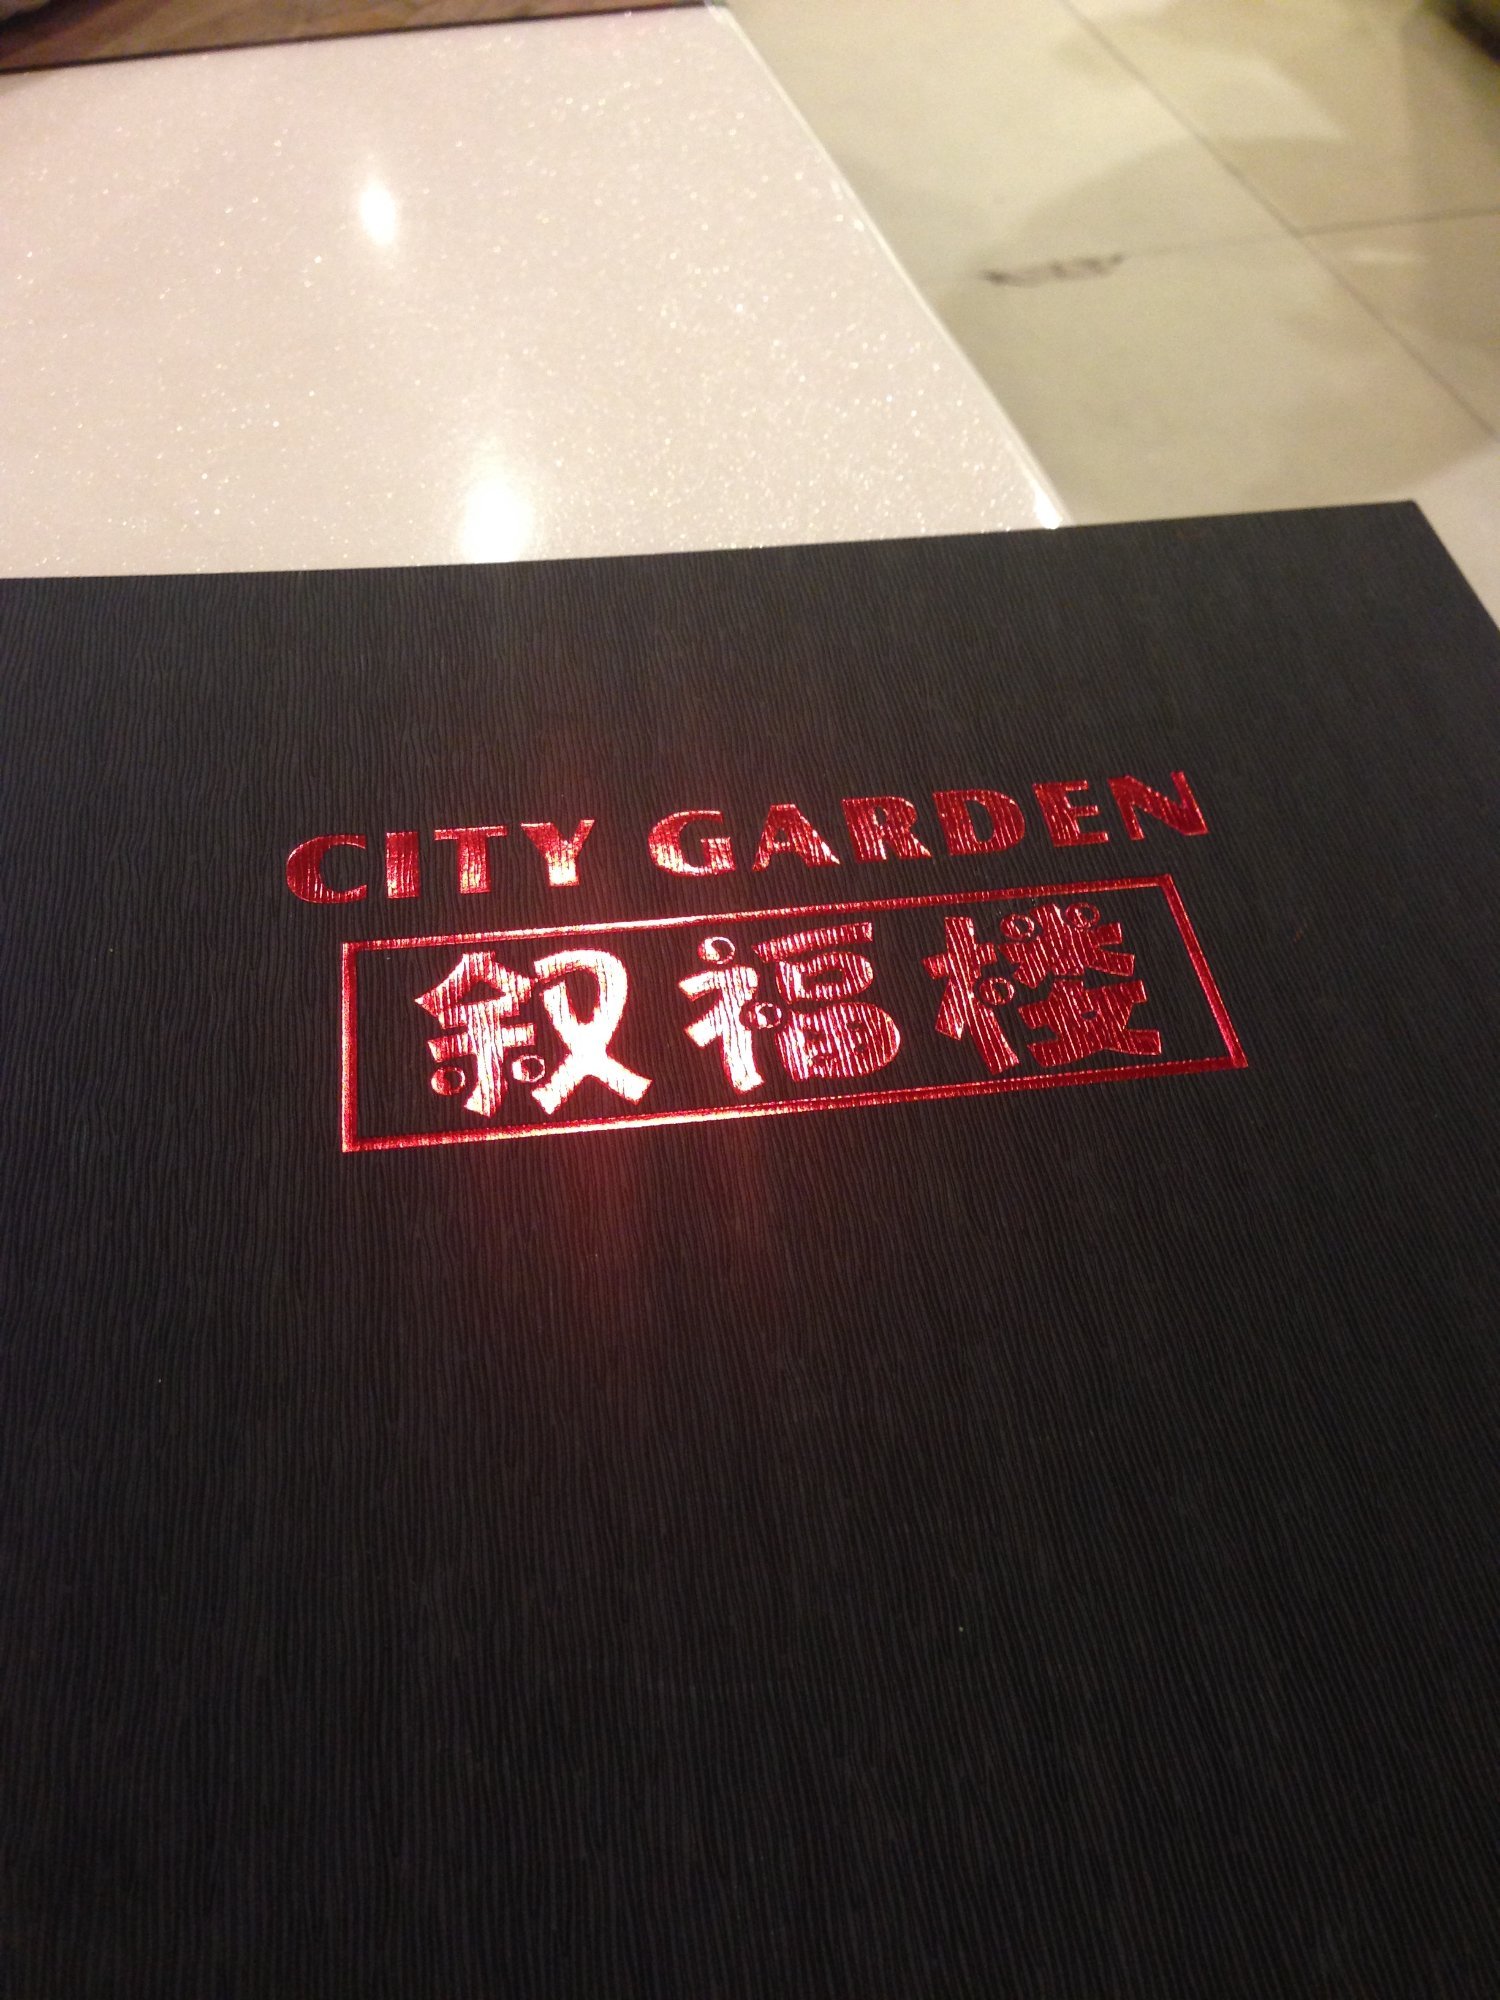 City Garden Chinese Restaurant - thumb 1